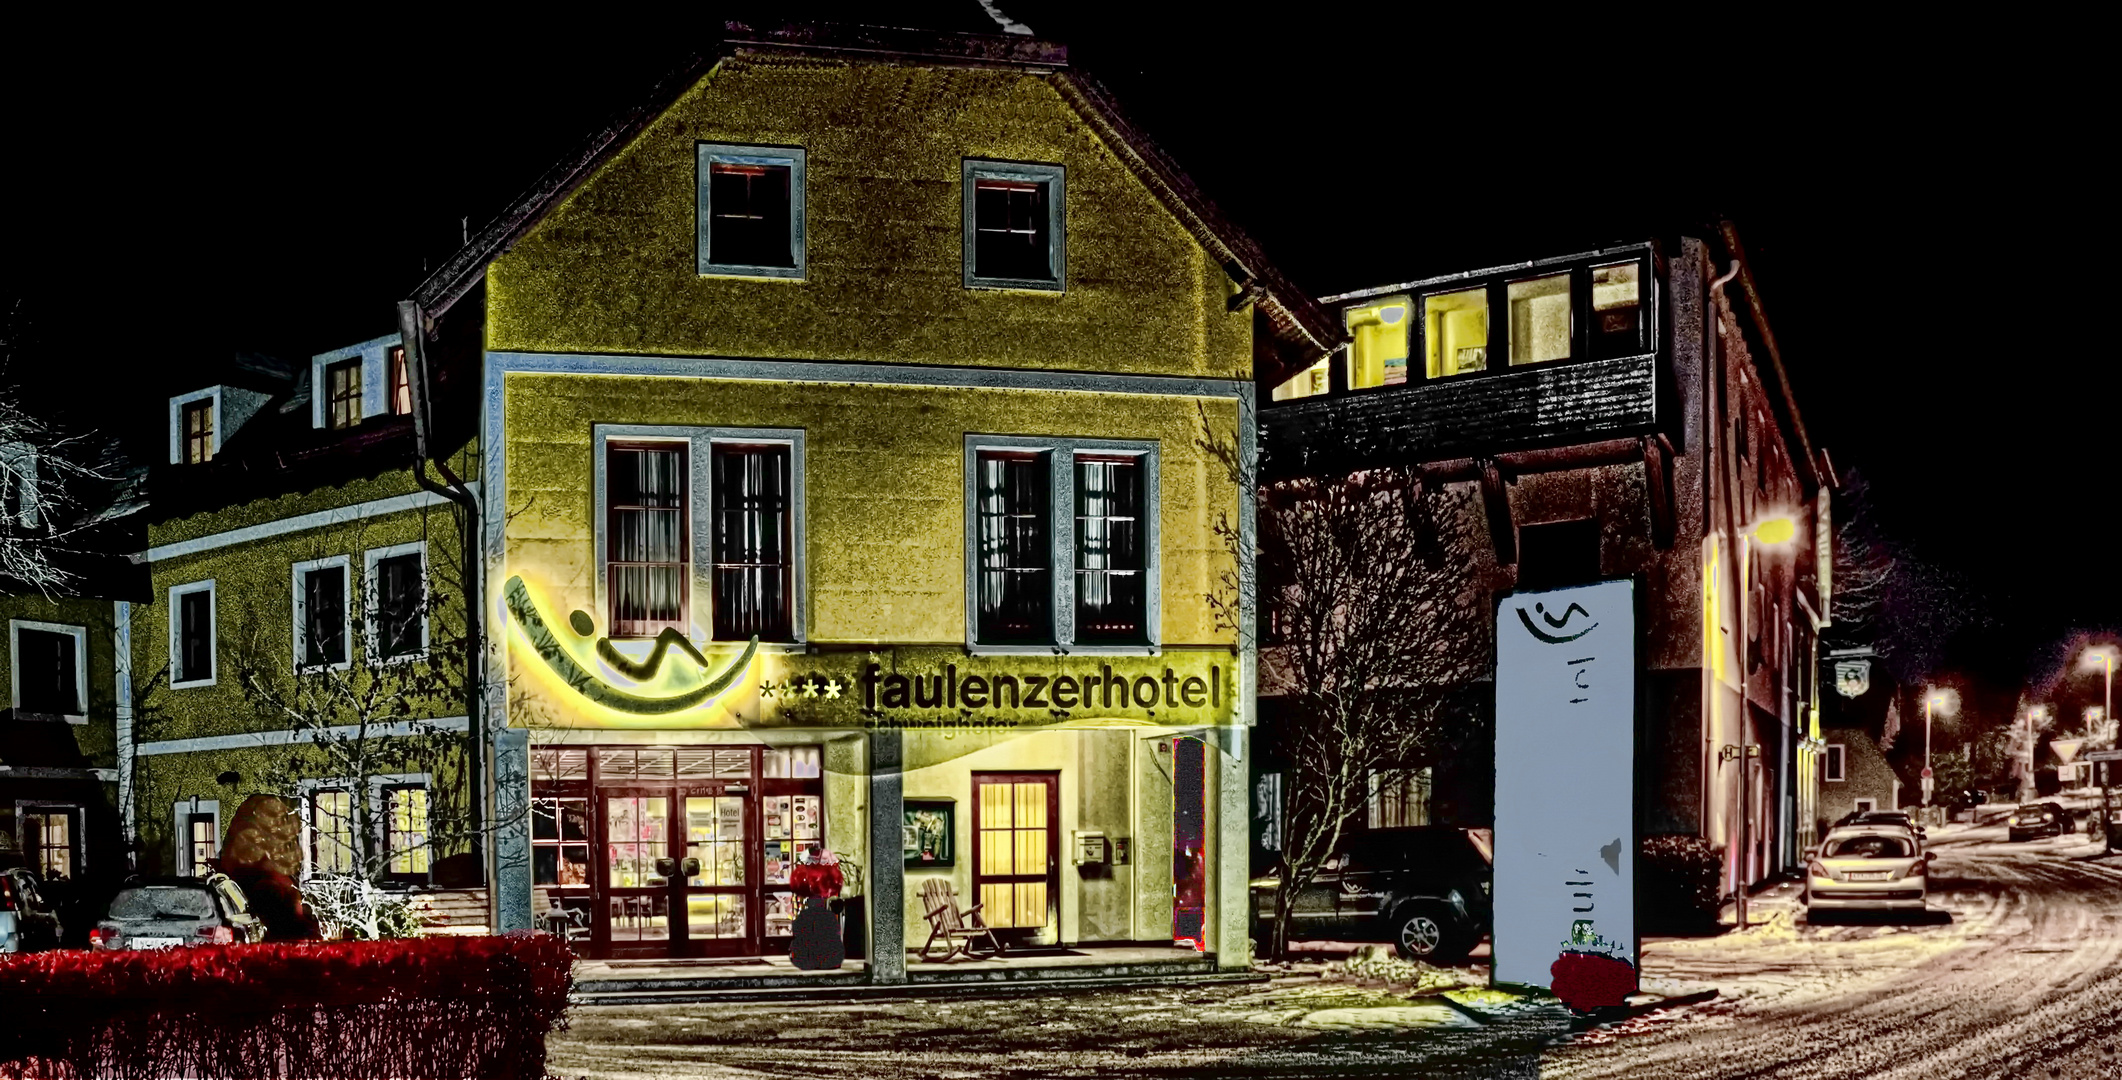  Faulenzerhotel, Friedersbach (Österreich)